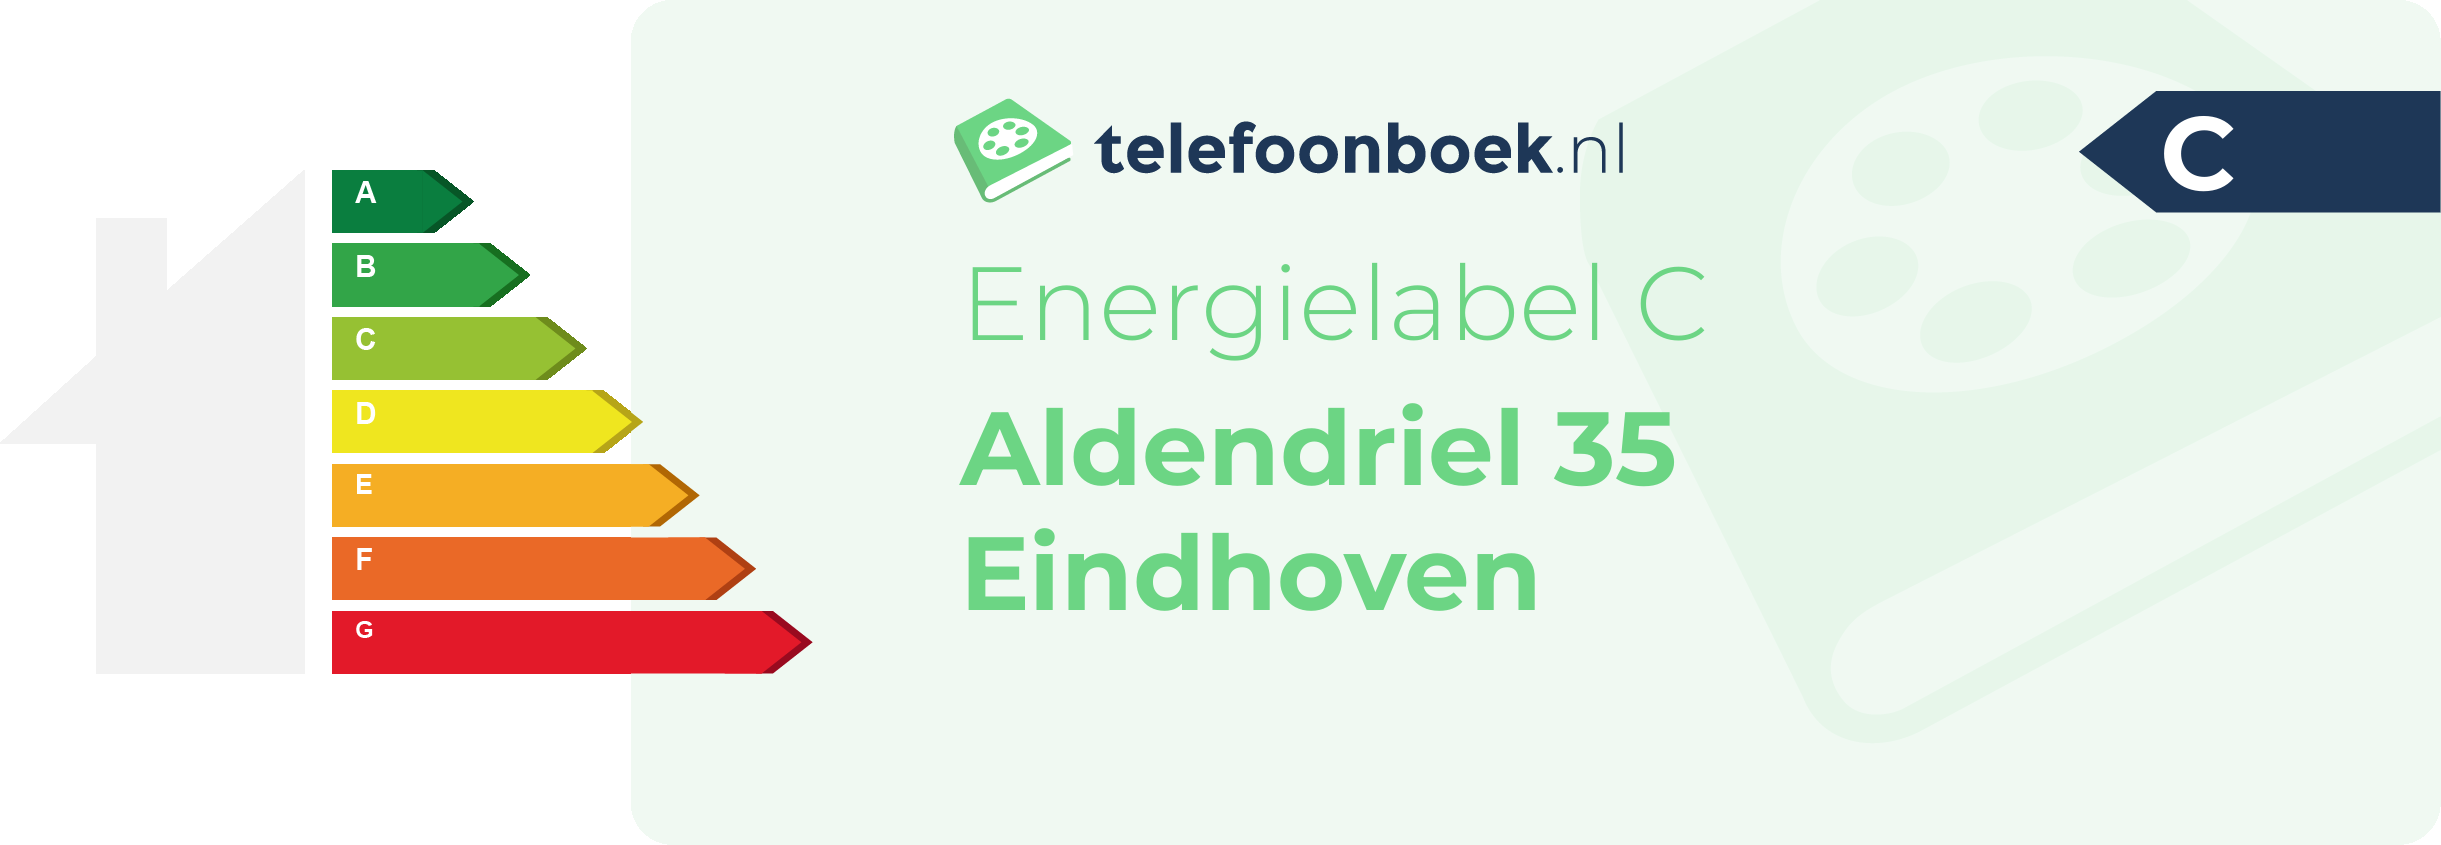 Energielabel Aldendriel 35 Eindhoven